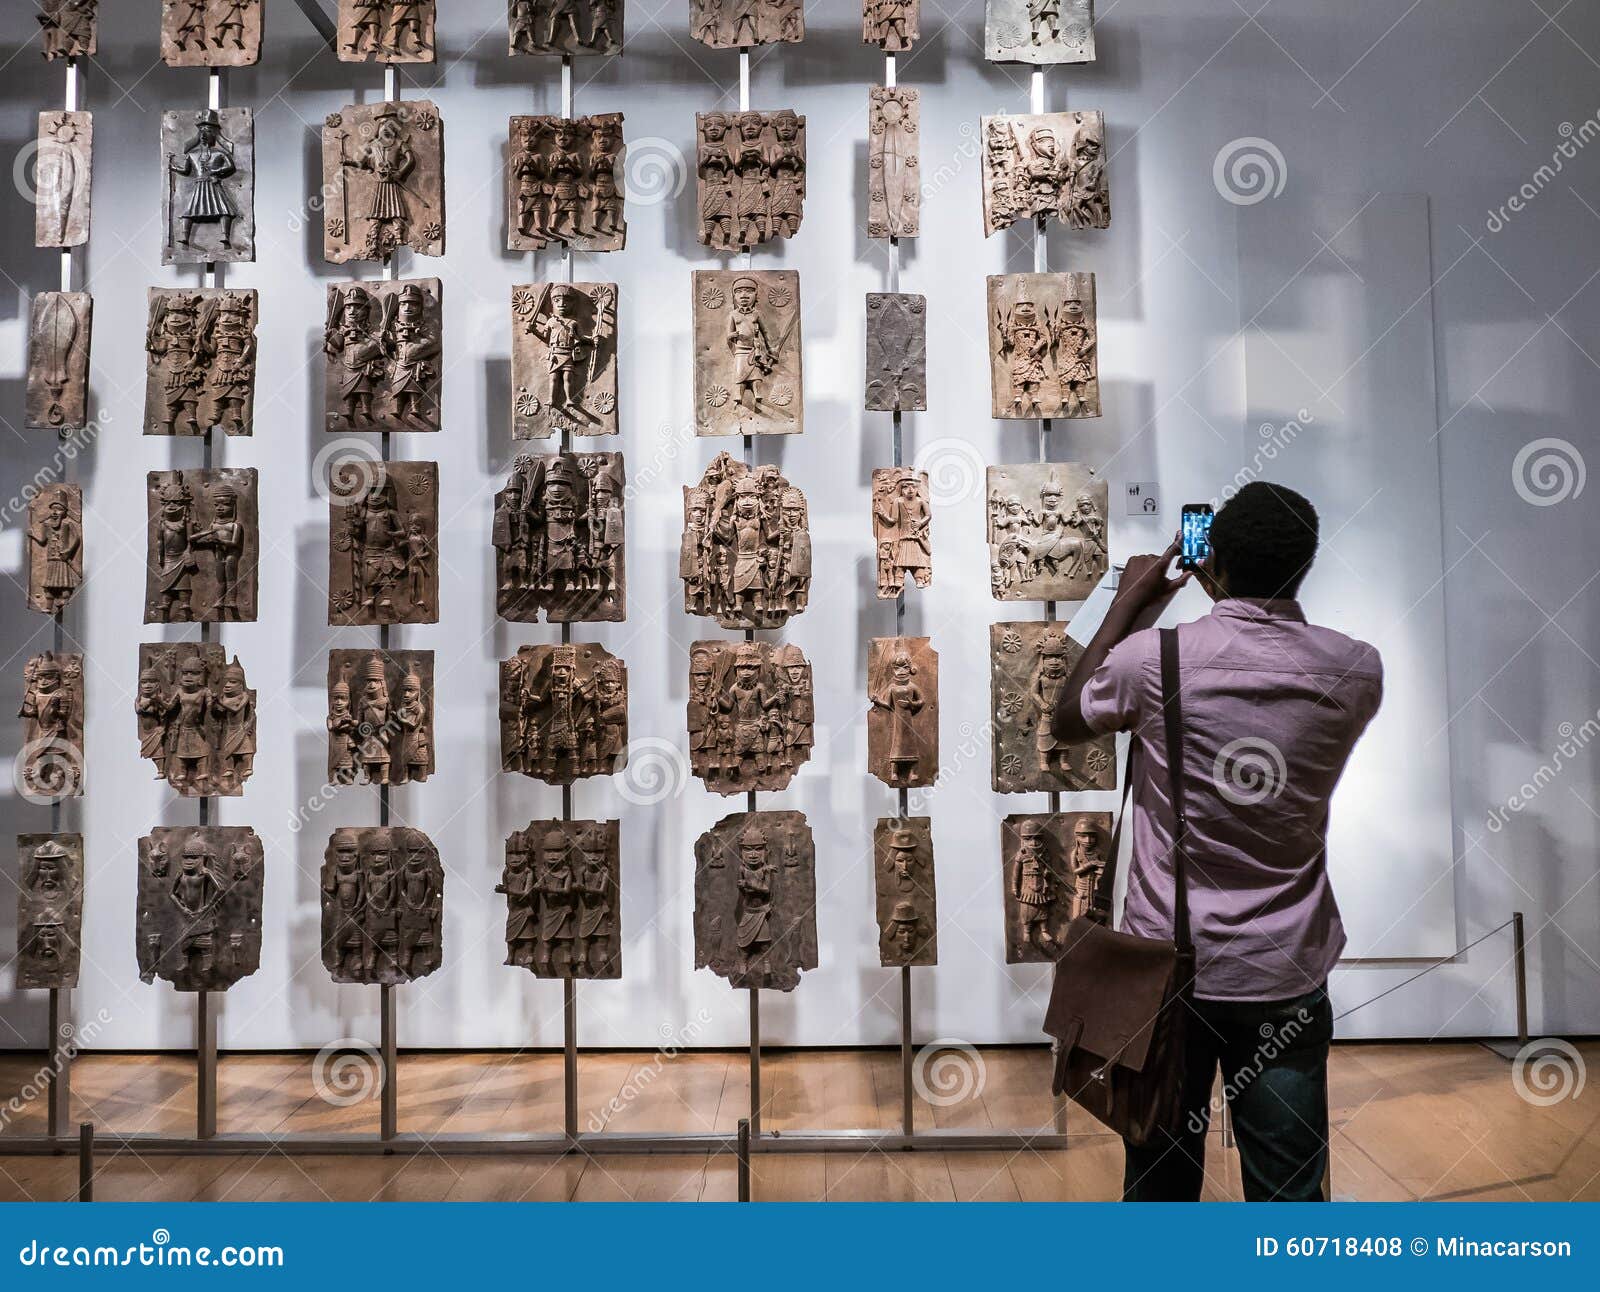 British Museum-de bezoeker fotografeert Benin plaques van Nigeria. Londen, Engeland, 22 Augustus, 2015: British Museum-de bezoeker fotografeert Benin plaques van 16de eeuw Nigeria